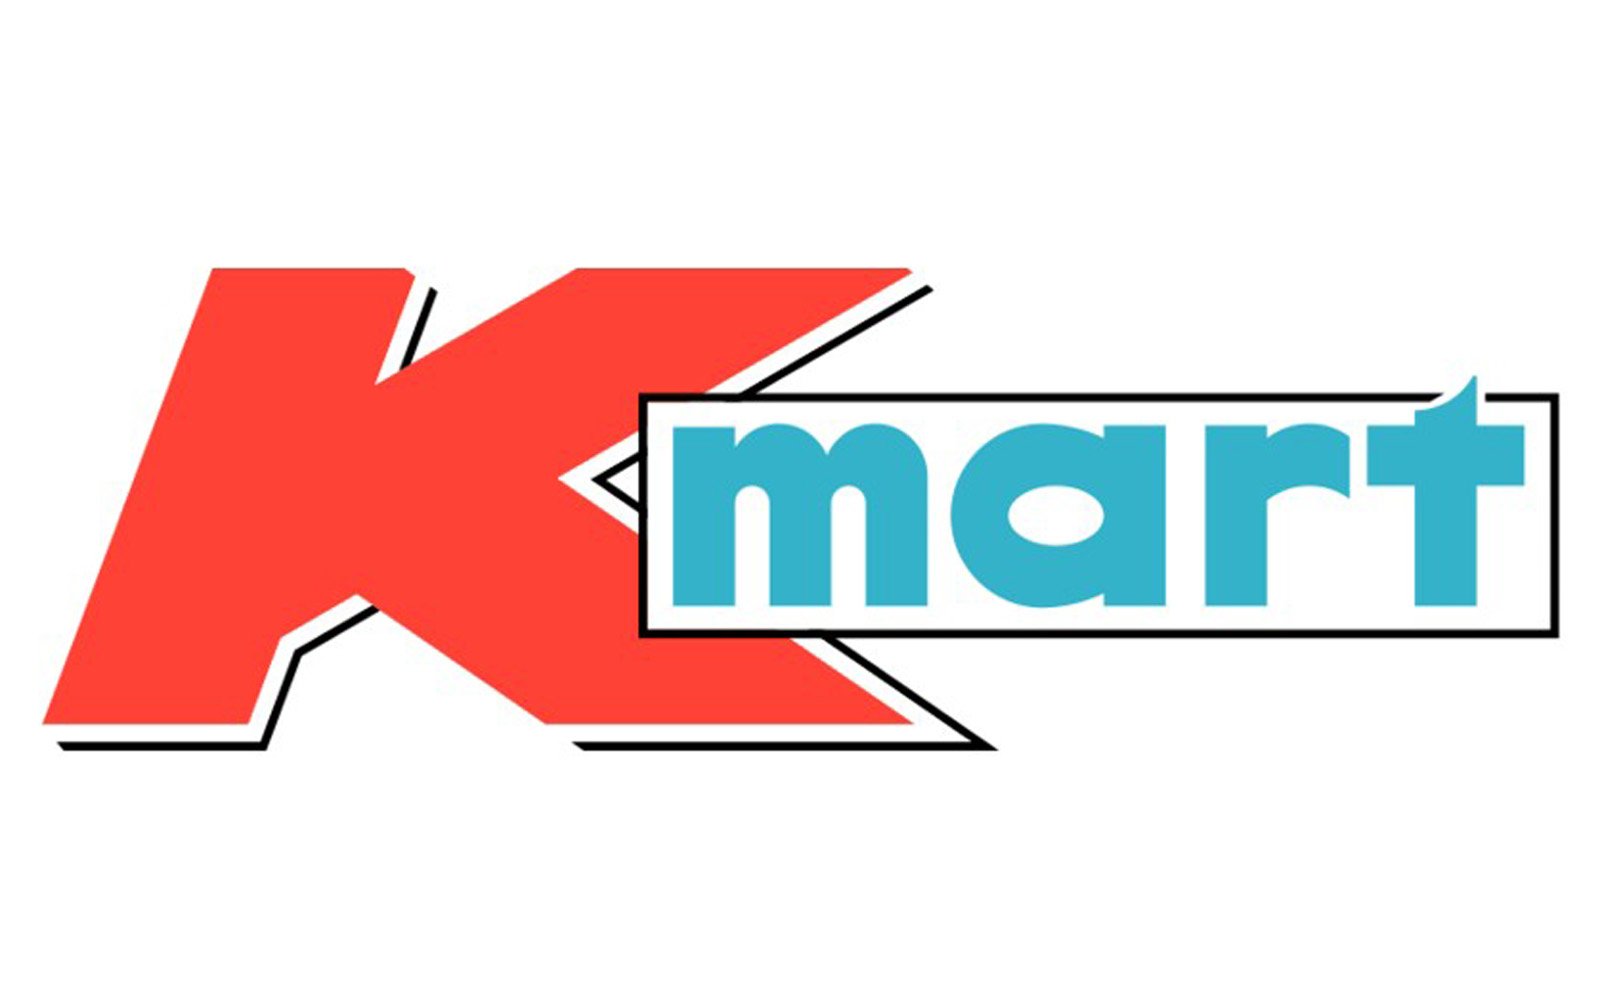 kmart logo png